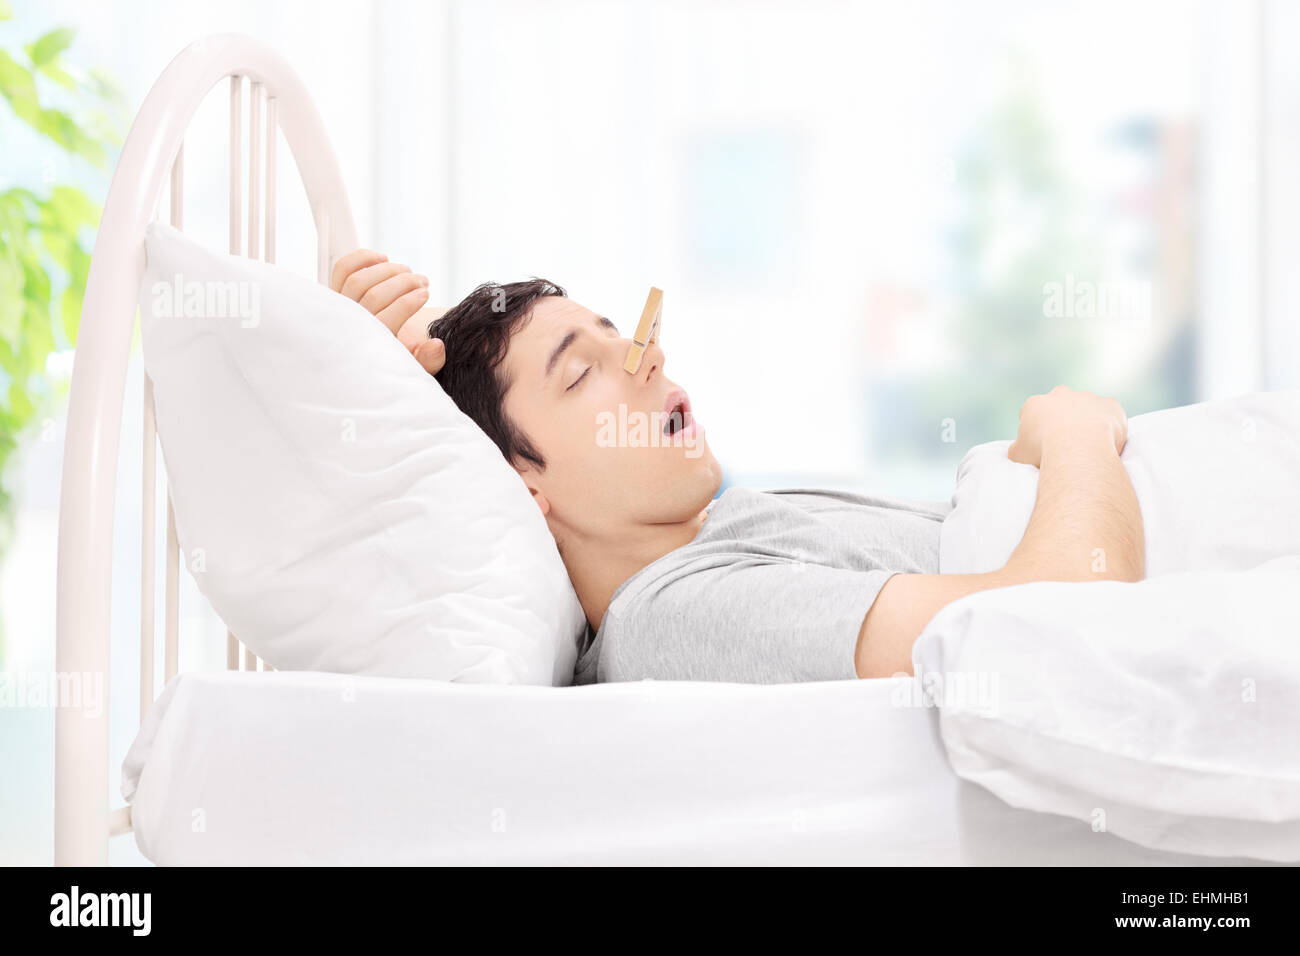 Dormir avec un homme clothespin sur son nez à la maison Banque D'Images